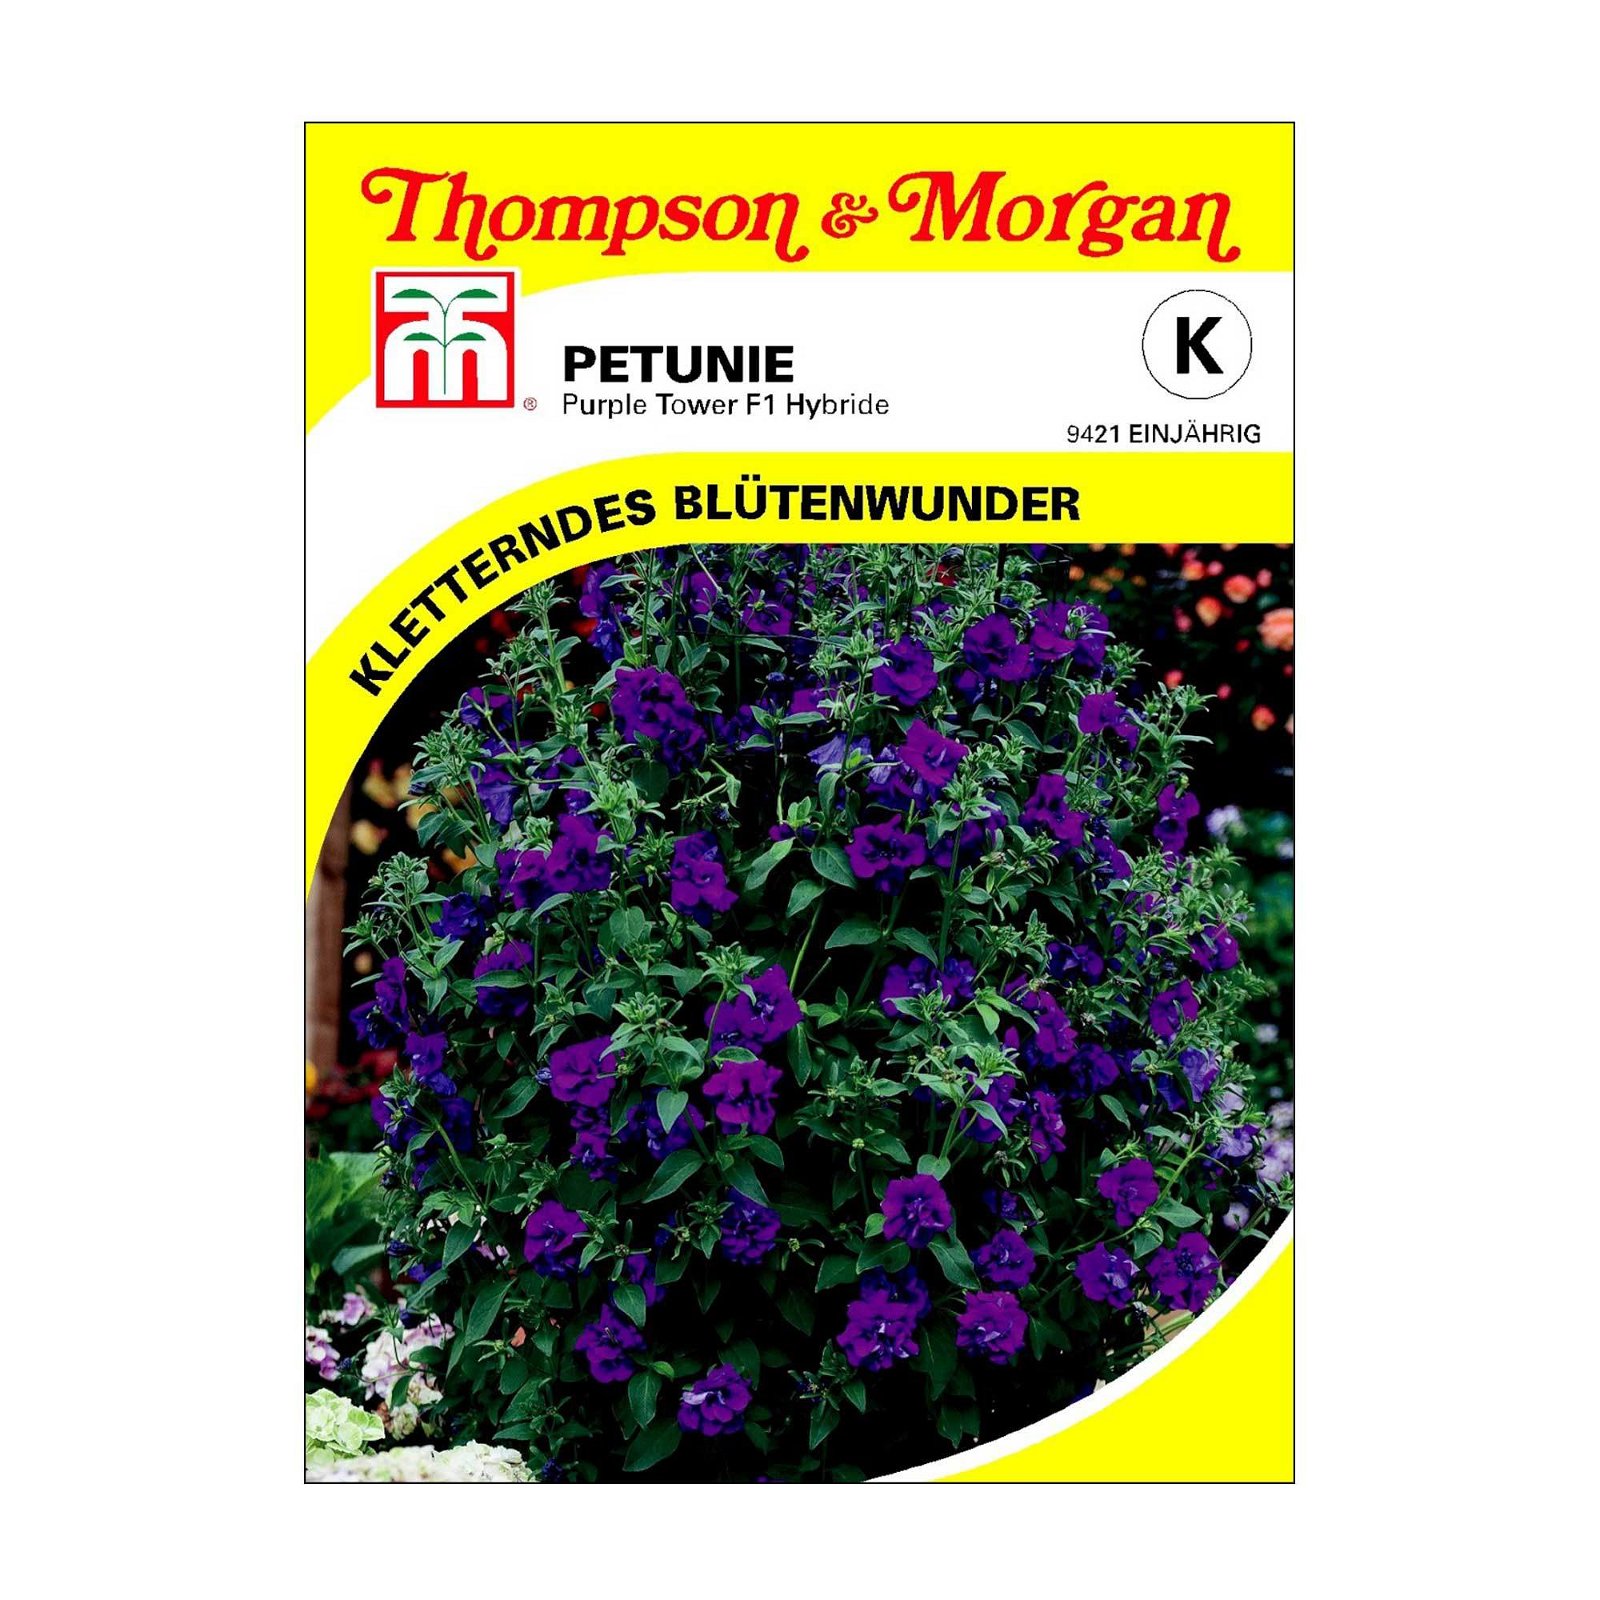 Petunie Purple Tower Hybrid, violette Blüten, einjährig blühend